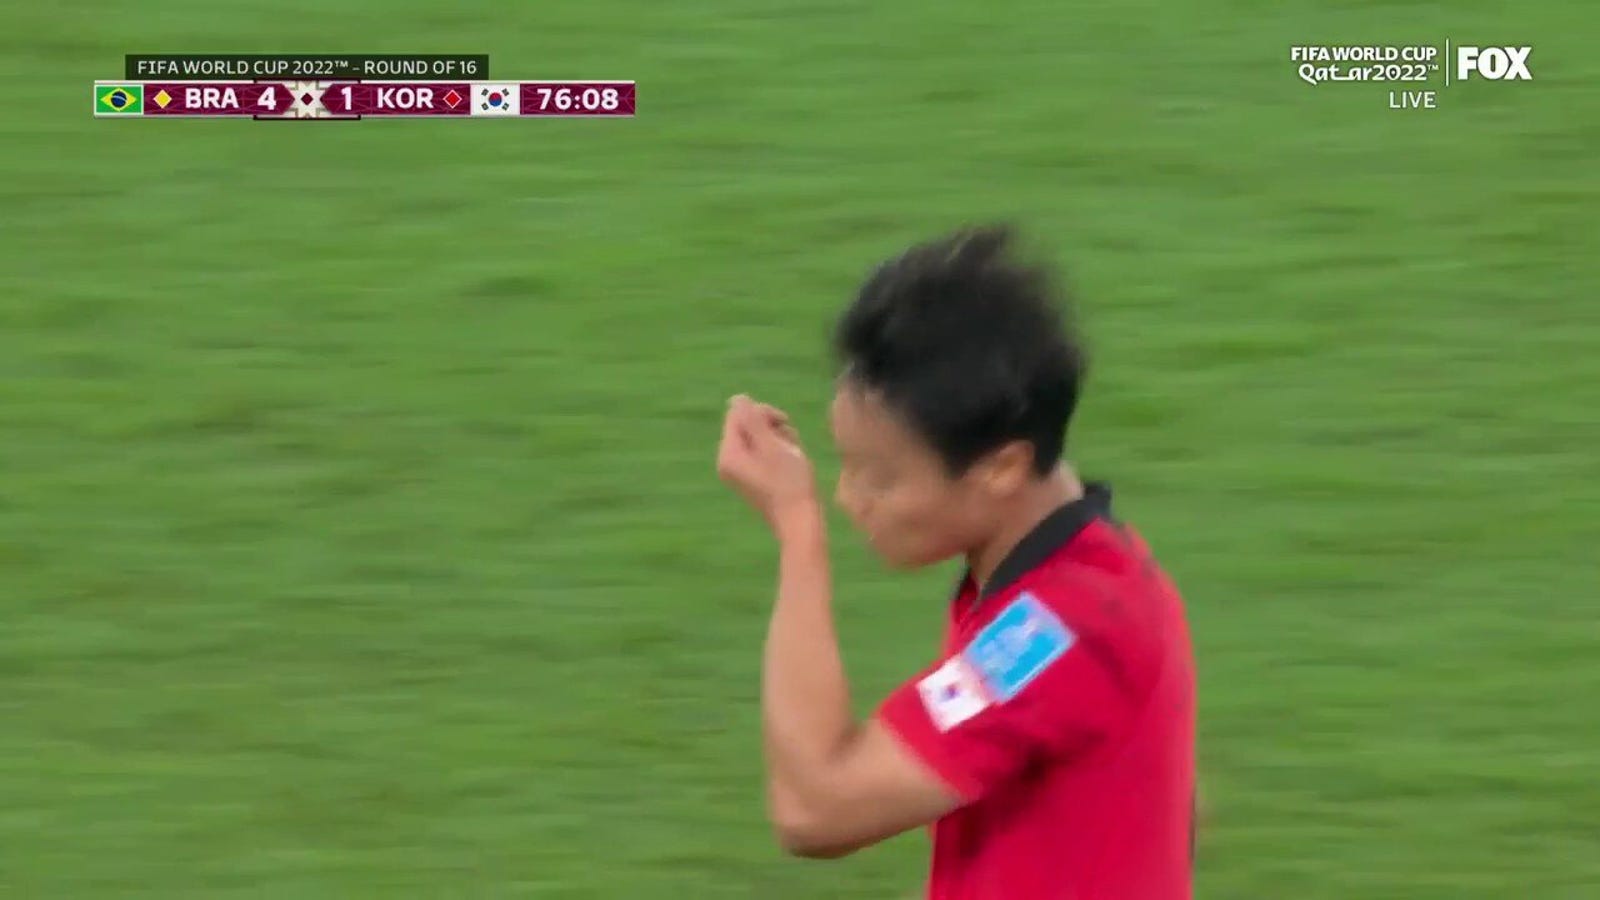 Il sudcoreano Baek Seung-ho segna un gol contro il Brasile in 76 minuti